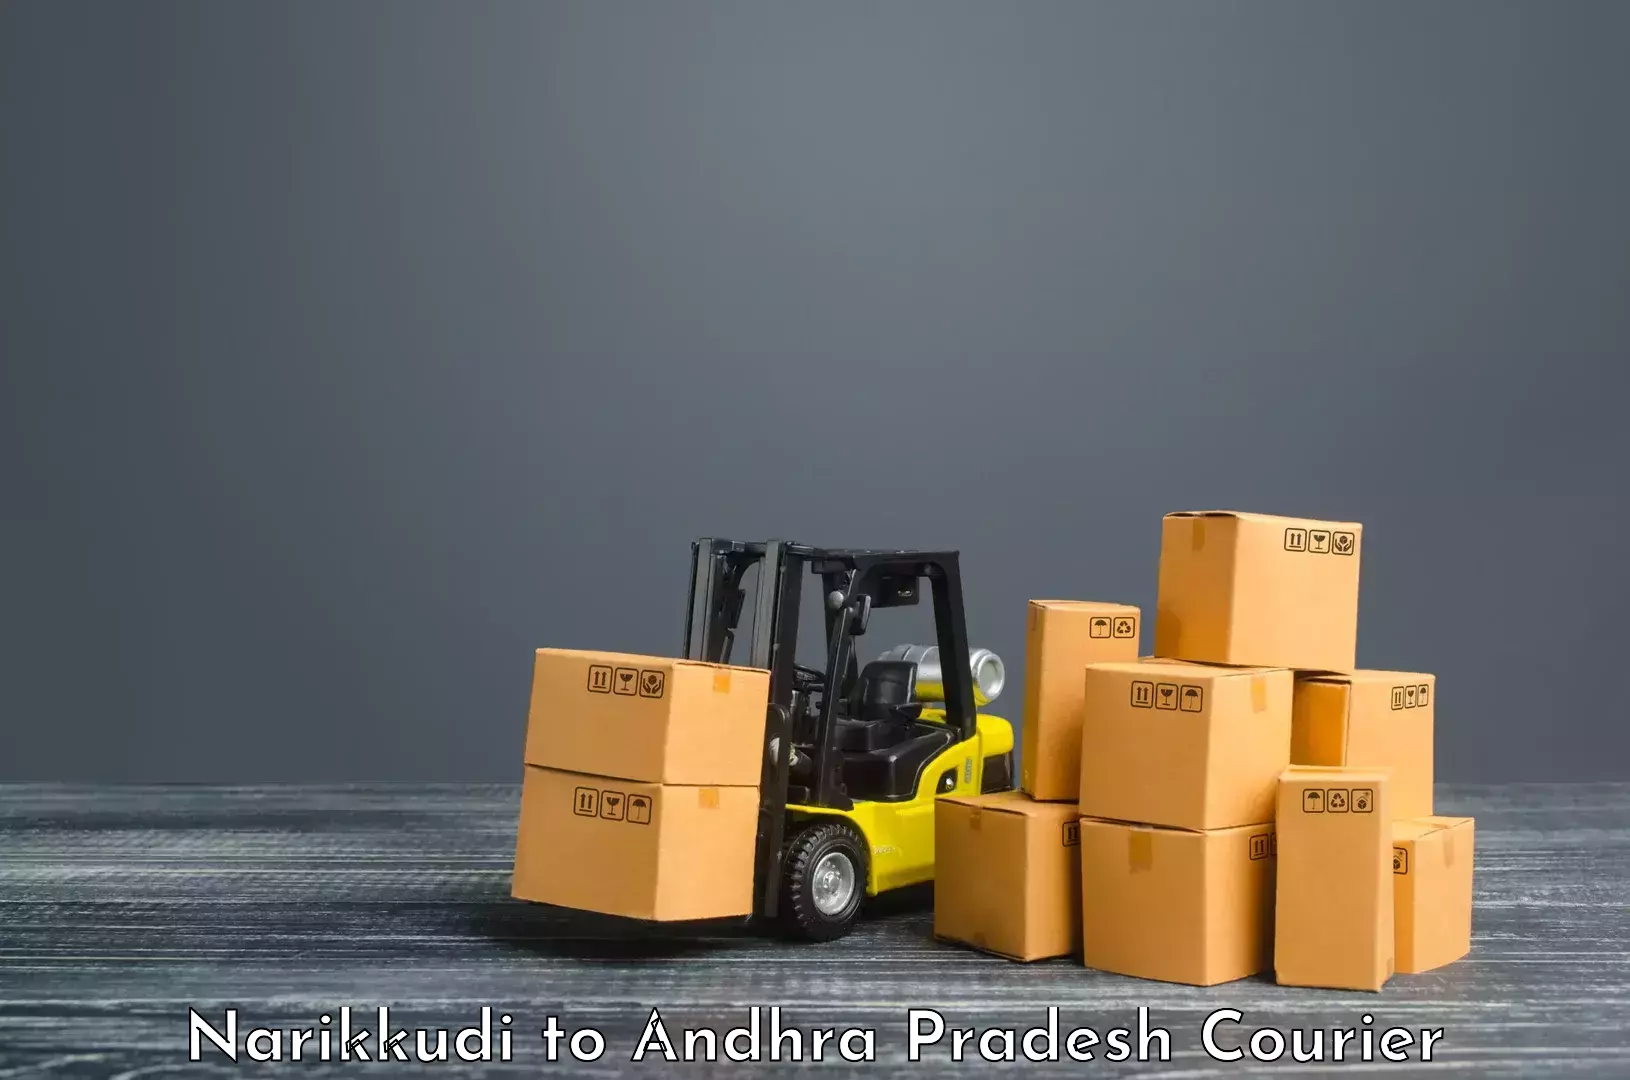 Tech-enabled shipping Narikkudi to Kothapalli